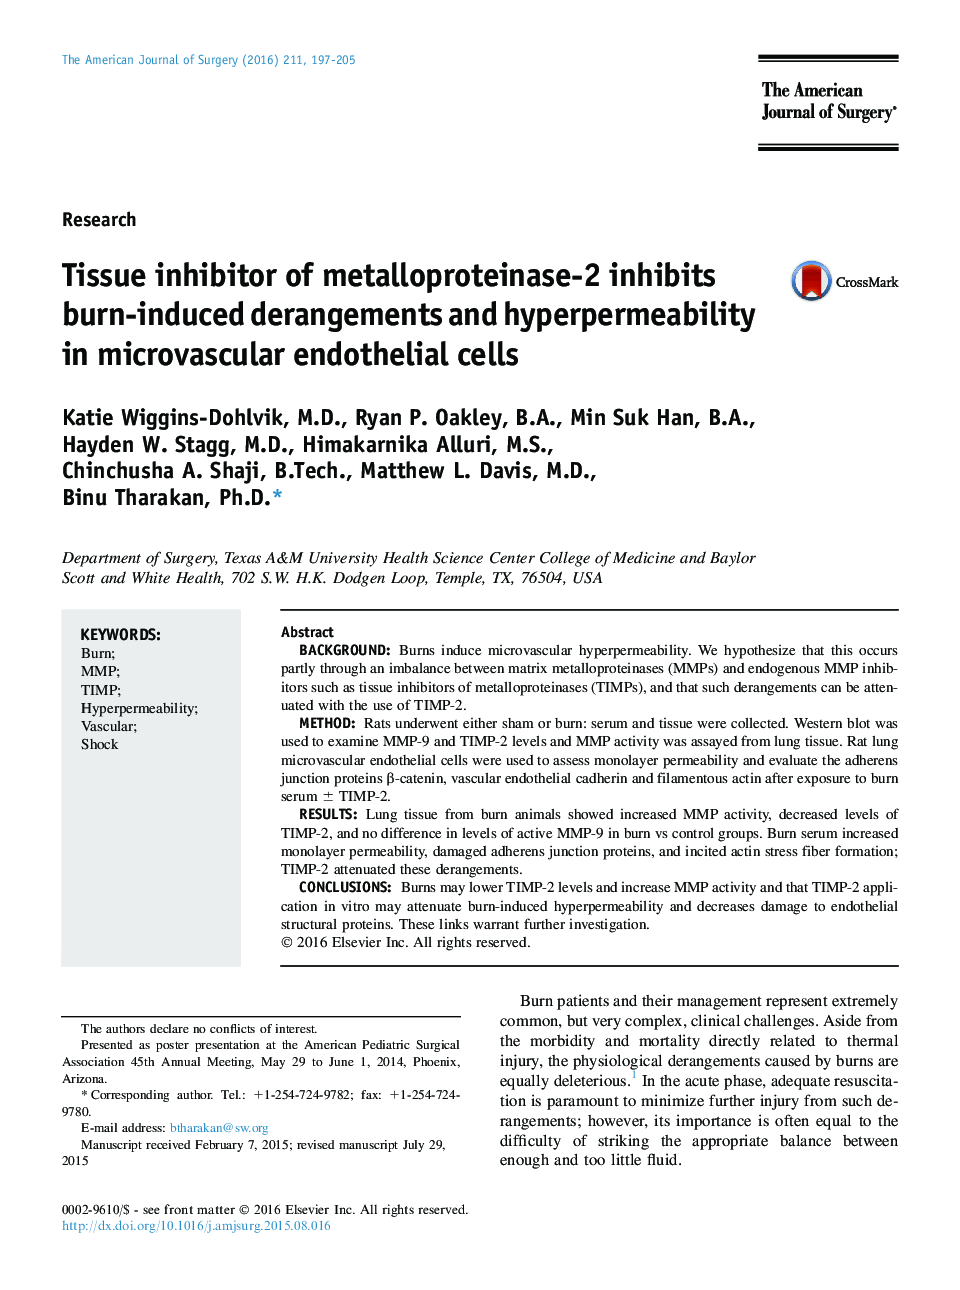 مهارکننده تحقیق در مورد متالوپروتئیناز 2 مهار اختلالات ناشی از سوختگی و پرکاری در سلولهای اندوتلیوم میکروارگالی 